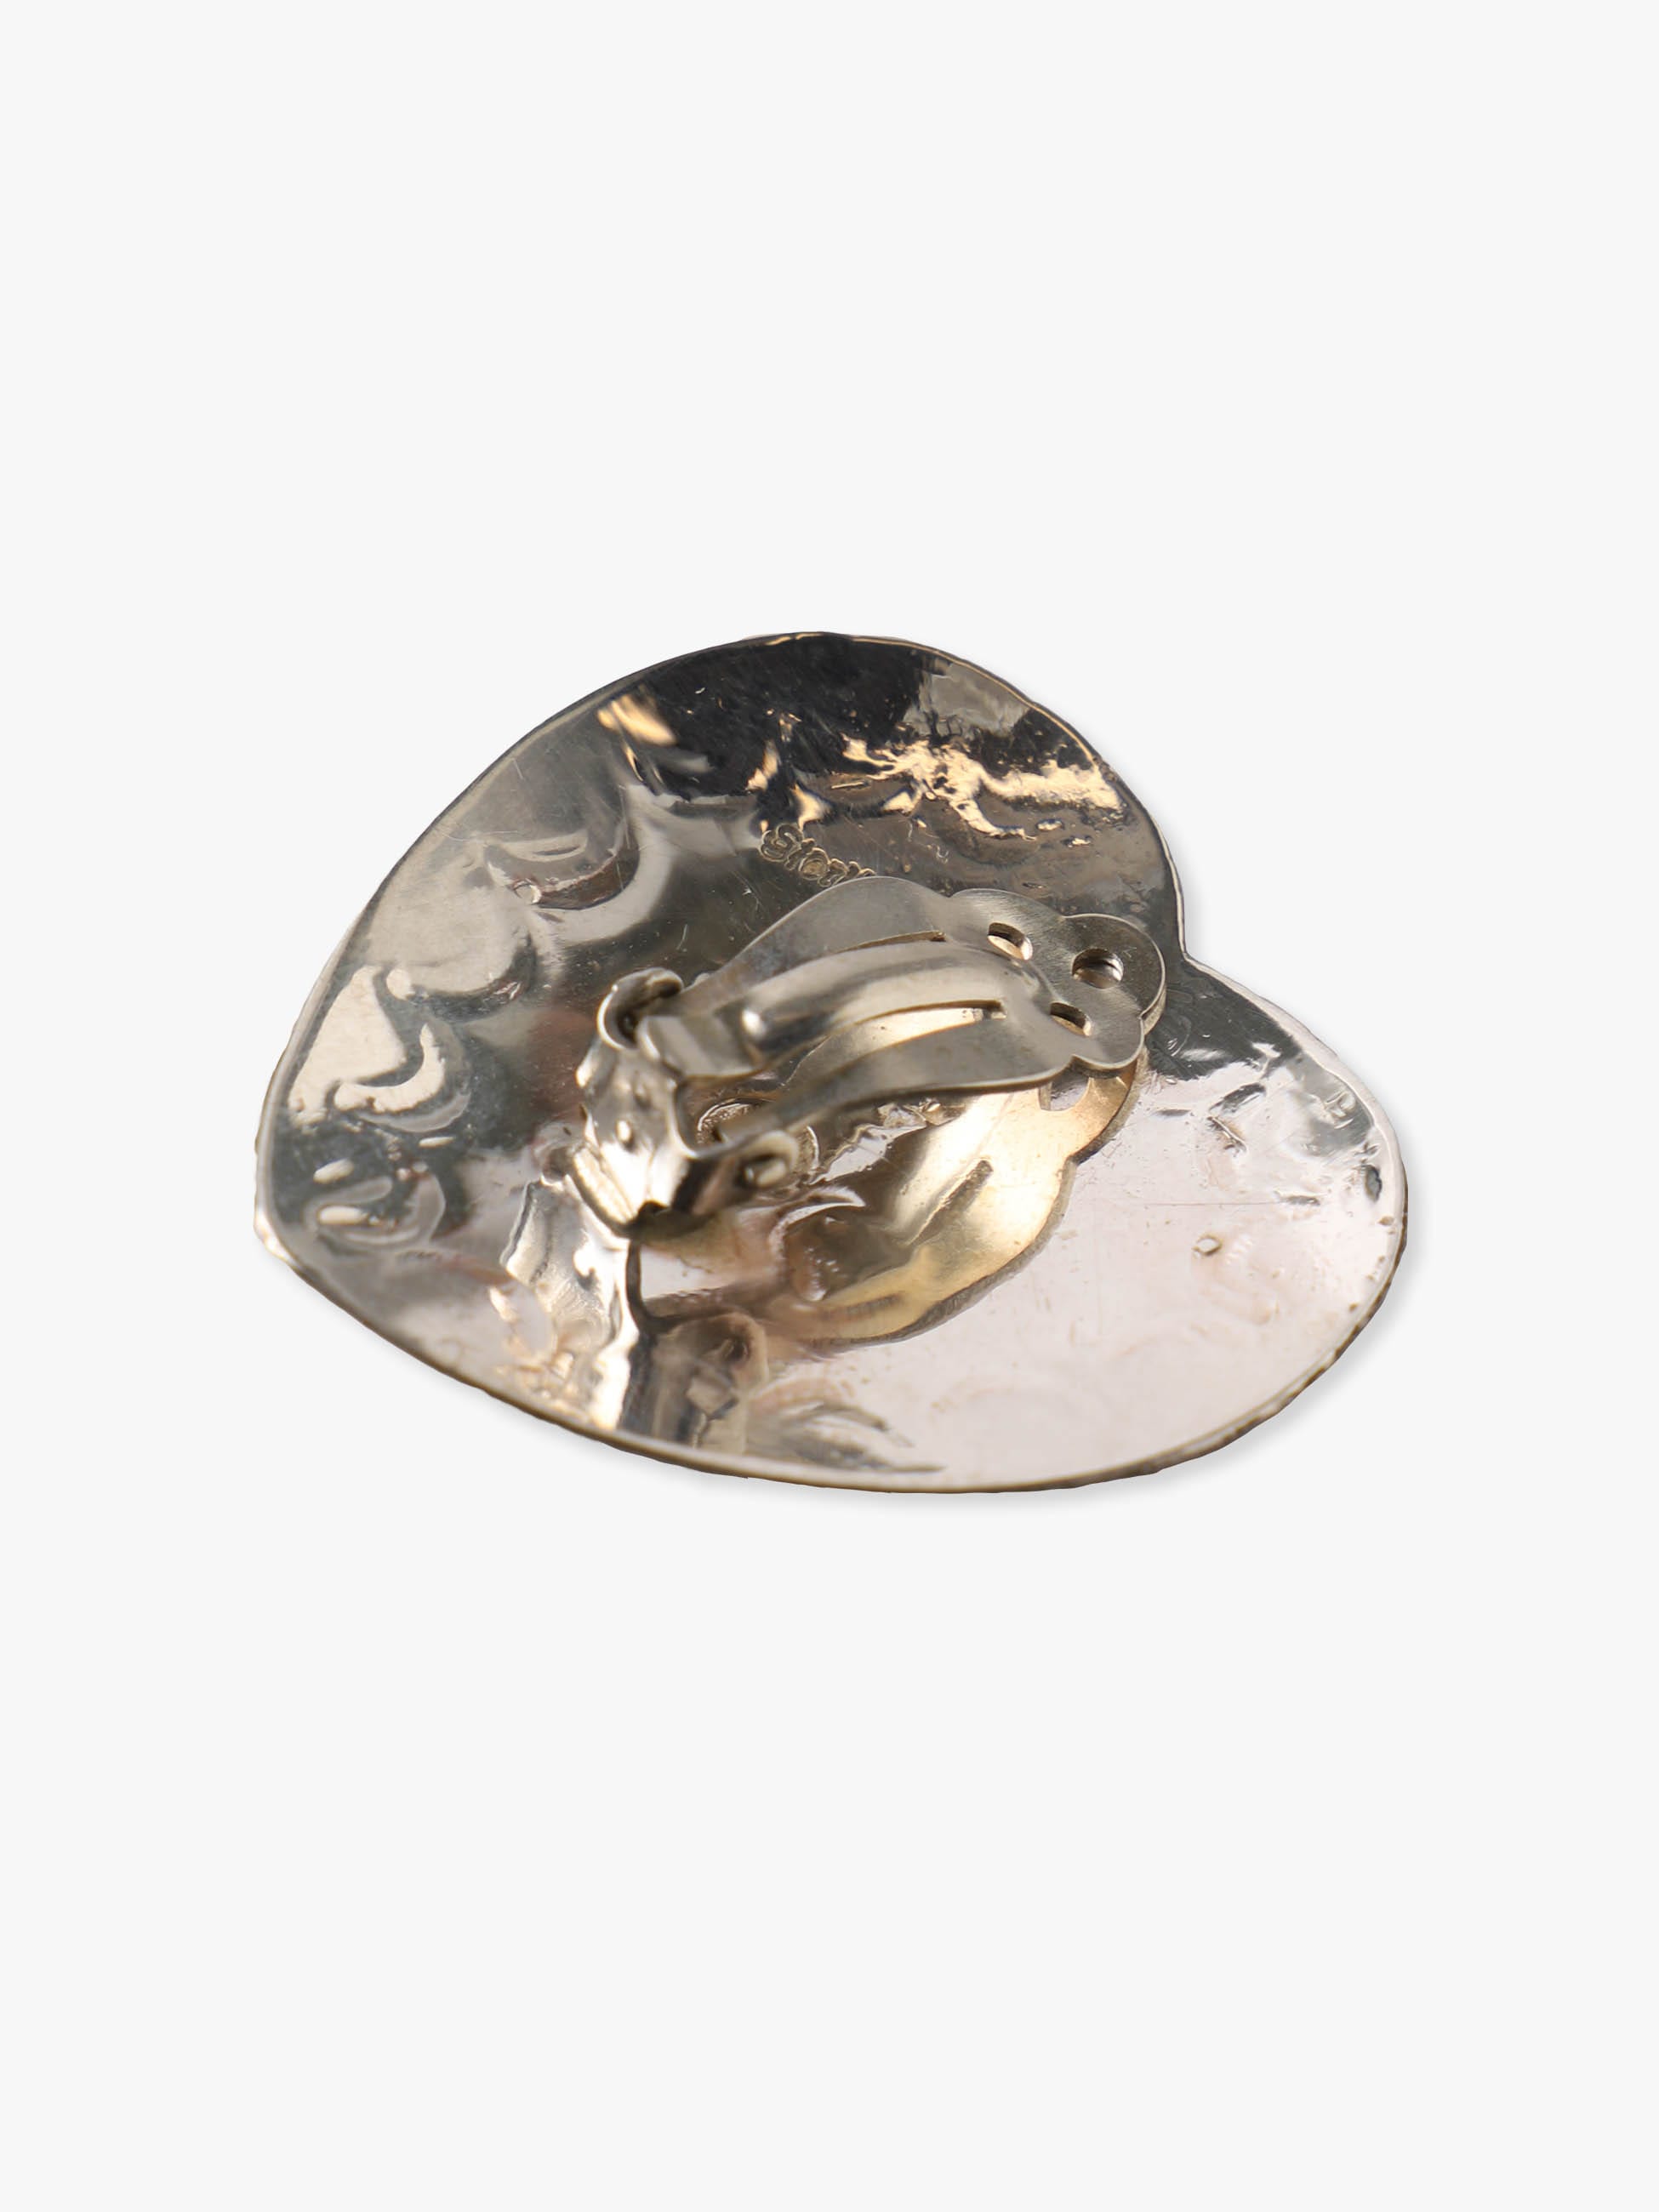 HARPO】Silver 13G Heart Earrings-